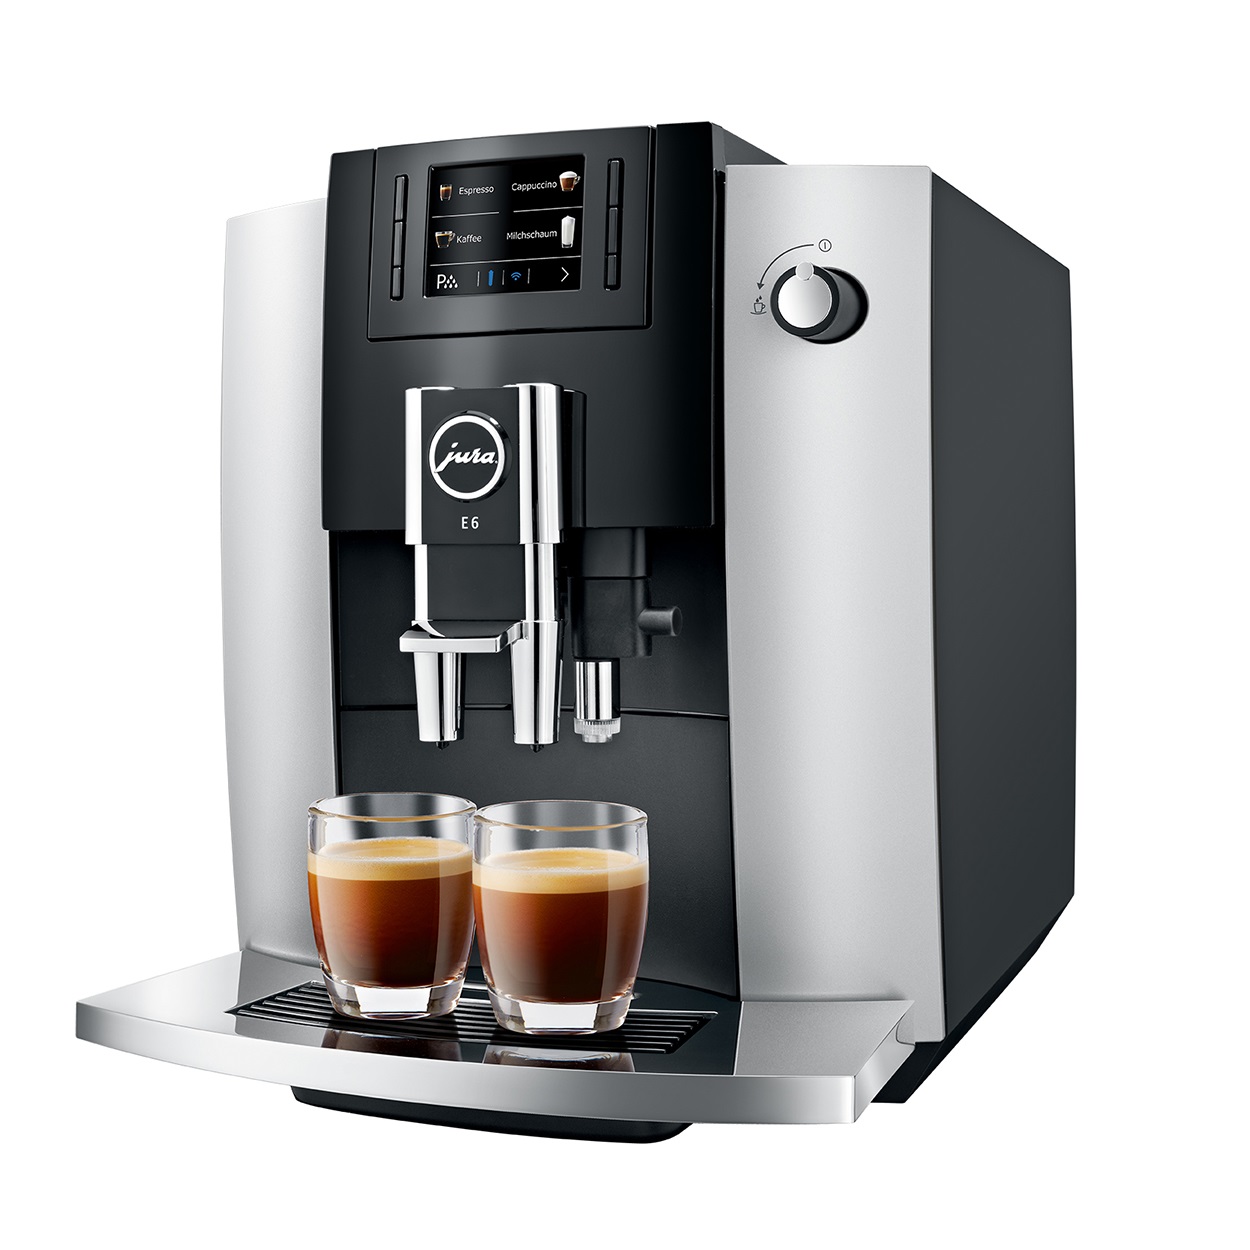 Espressor Jura E6 Professional Aroma Platin, 1,9 l, 280g, rasnita AromaG3, afisaj TFT+ cadou cafea